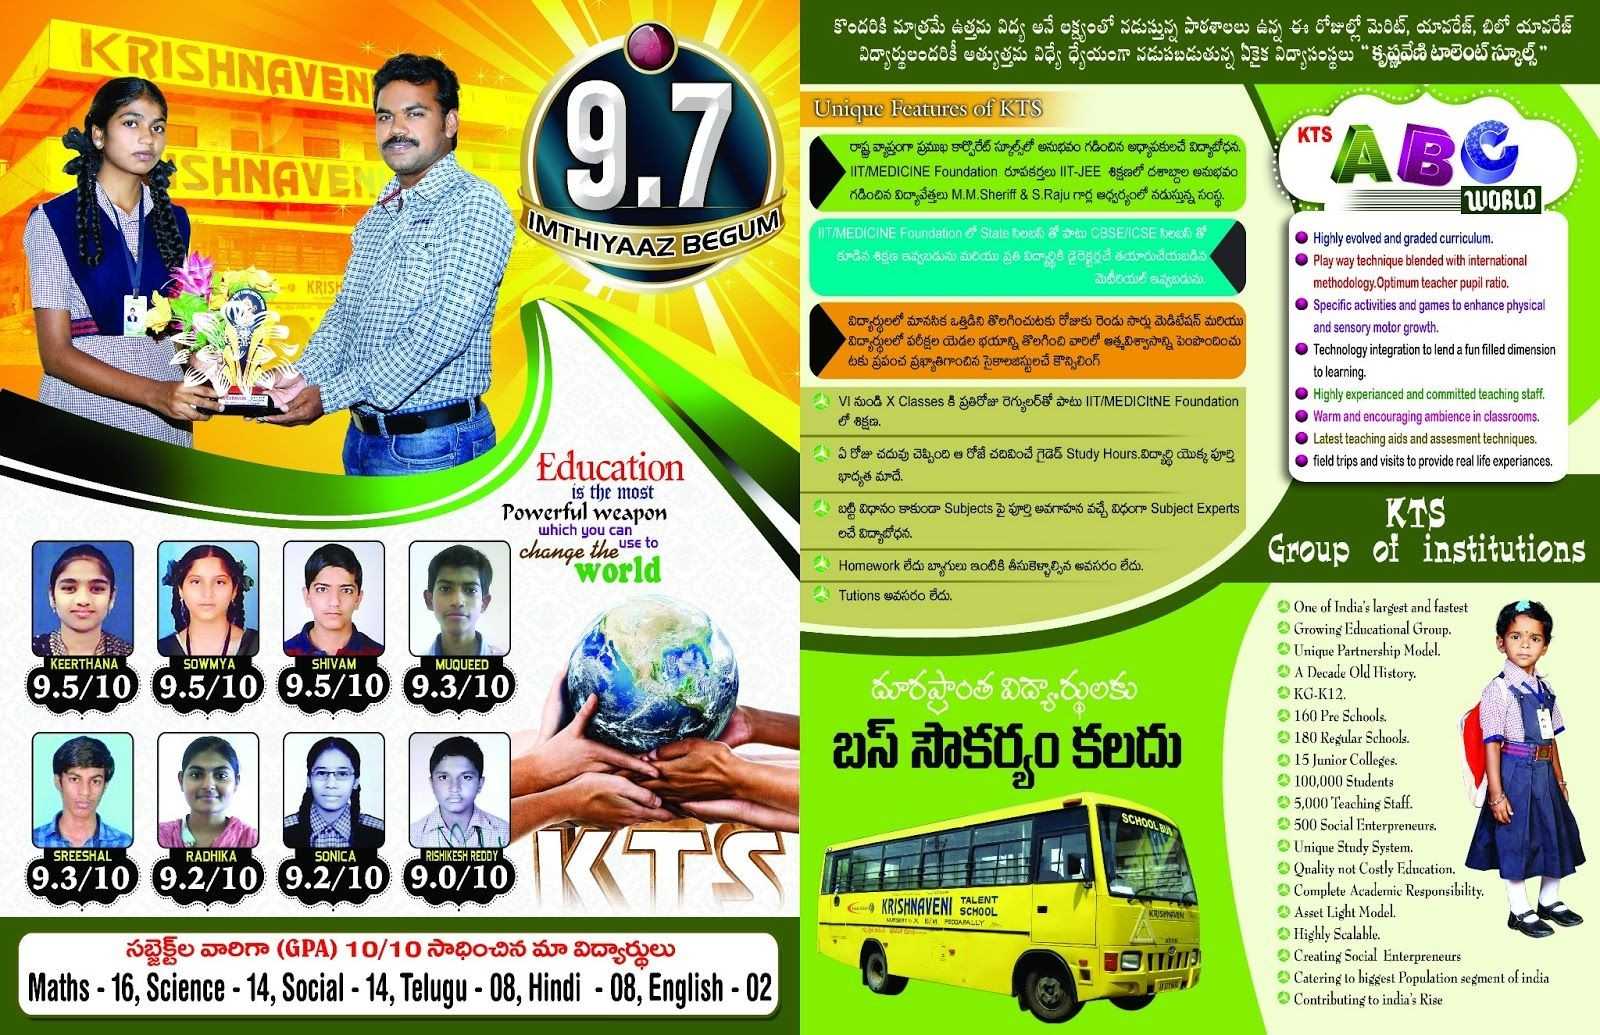 Krishnaveni School Brochure Template Brochures Pinterest Inside Play School Brochure Templates